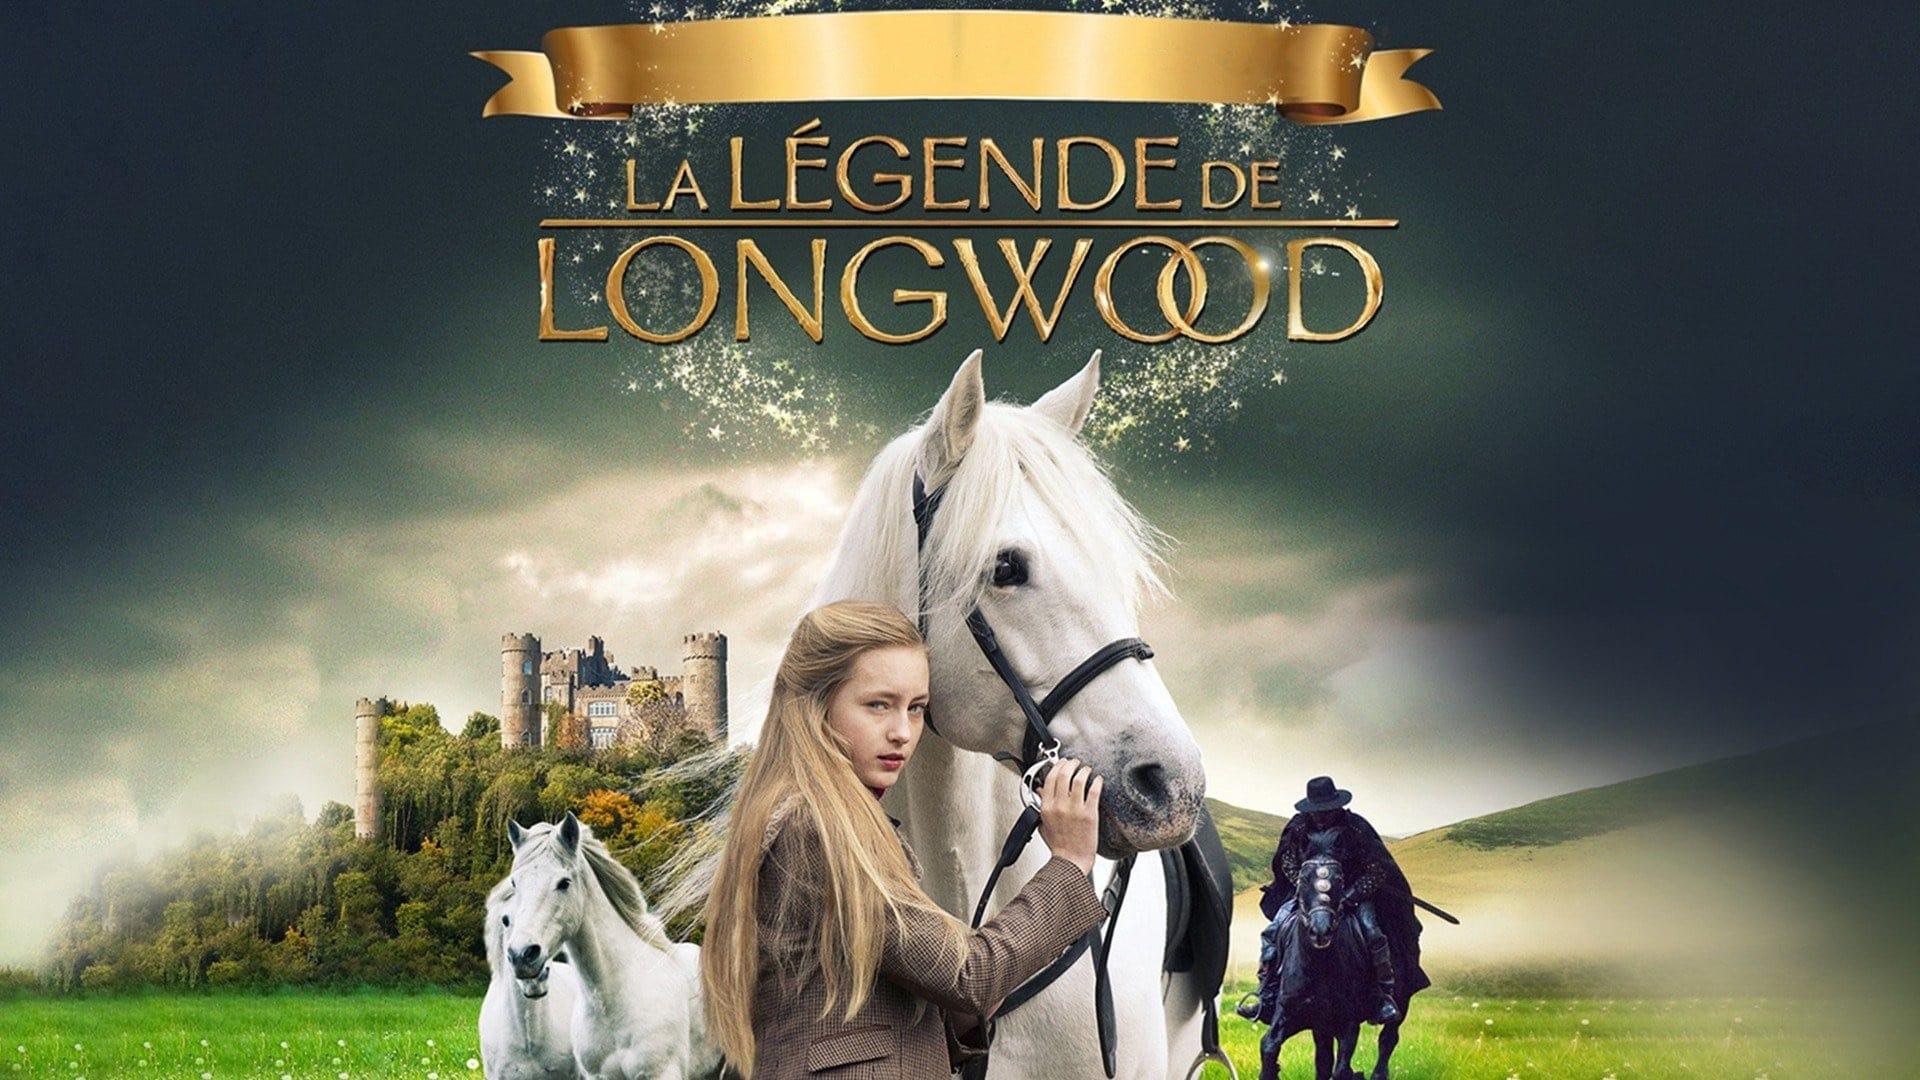 The Legend of Longwood backdrop